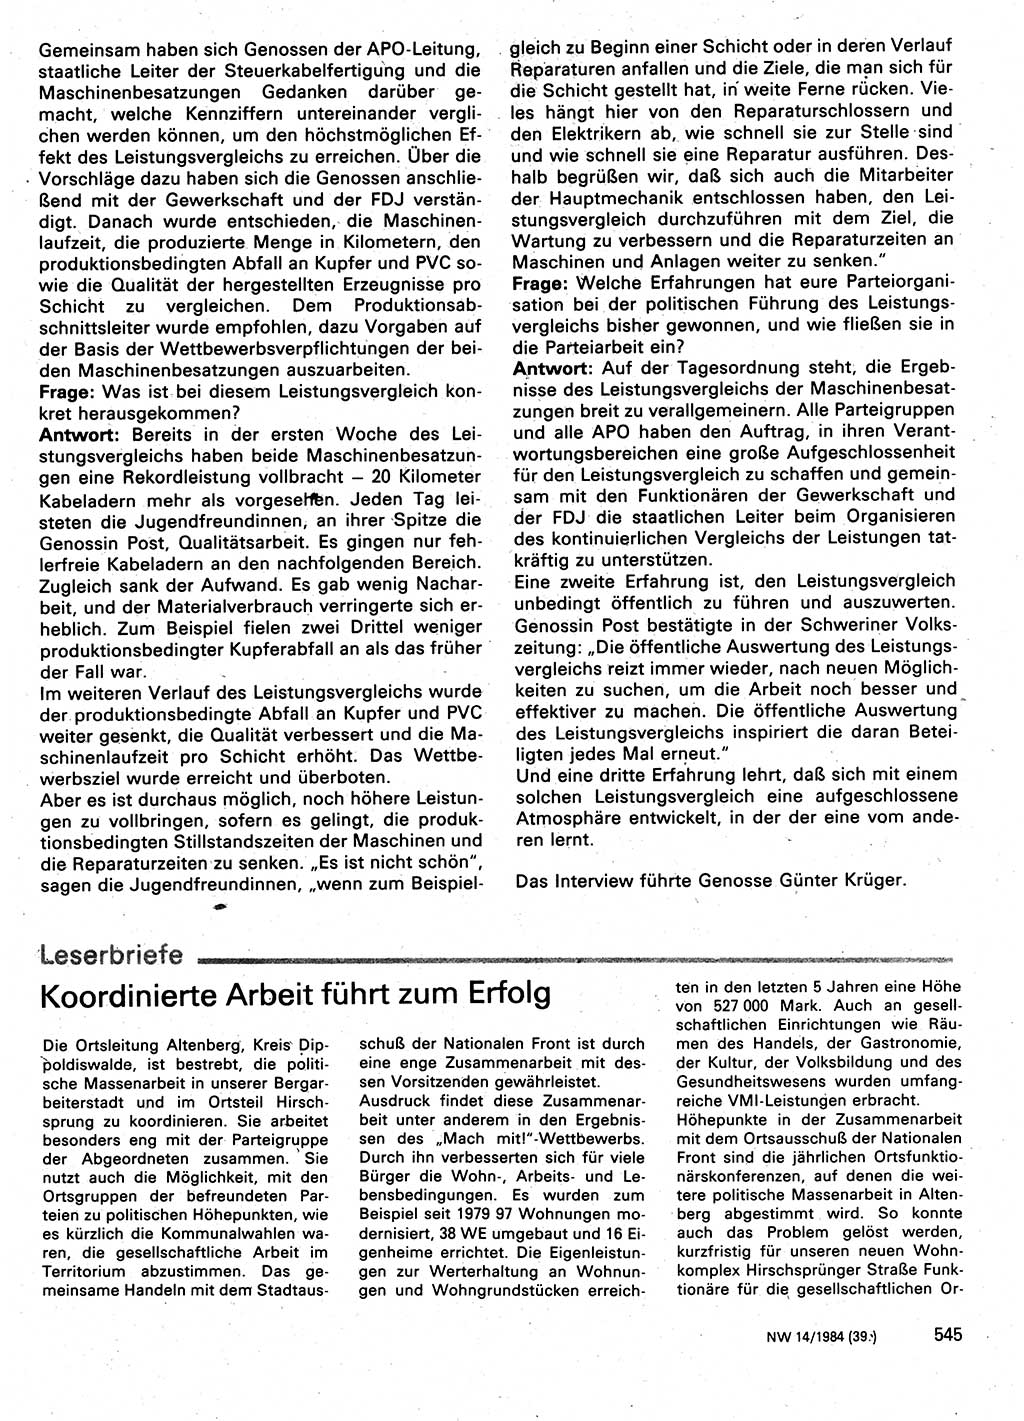 Neuer Weg (NW), Organ des Zentralkomitees (ZK) der SED (Sozialistische Einheitspartei Deutschlands) für Fragen des Parteilebens, 39. Jahrgang [Deutsche Demokratische Republik (DDR)] 1984, Seite 545 (NW ZK SED DDR 1984, S. 545)